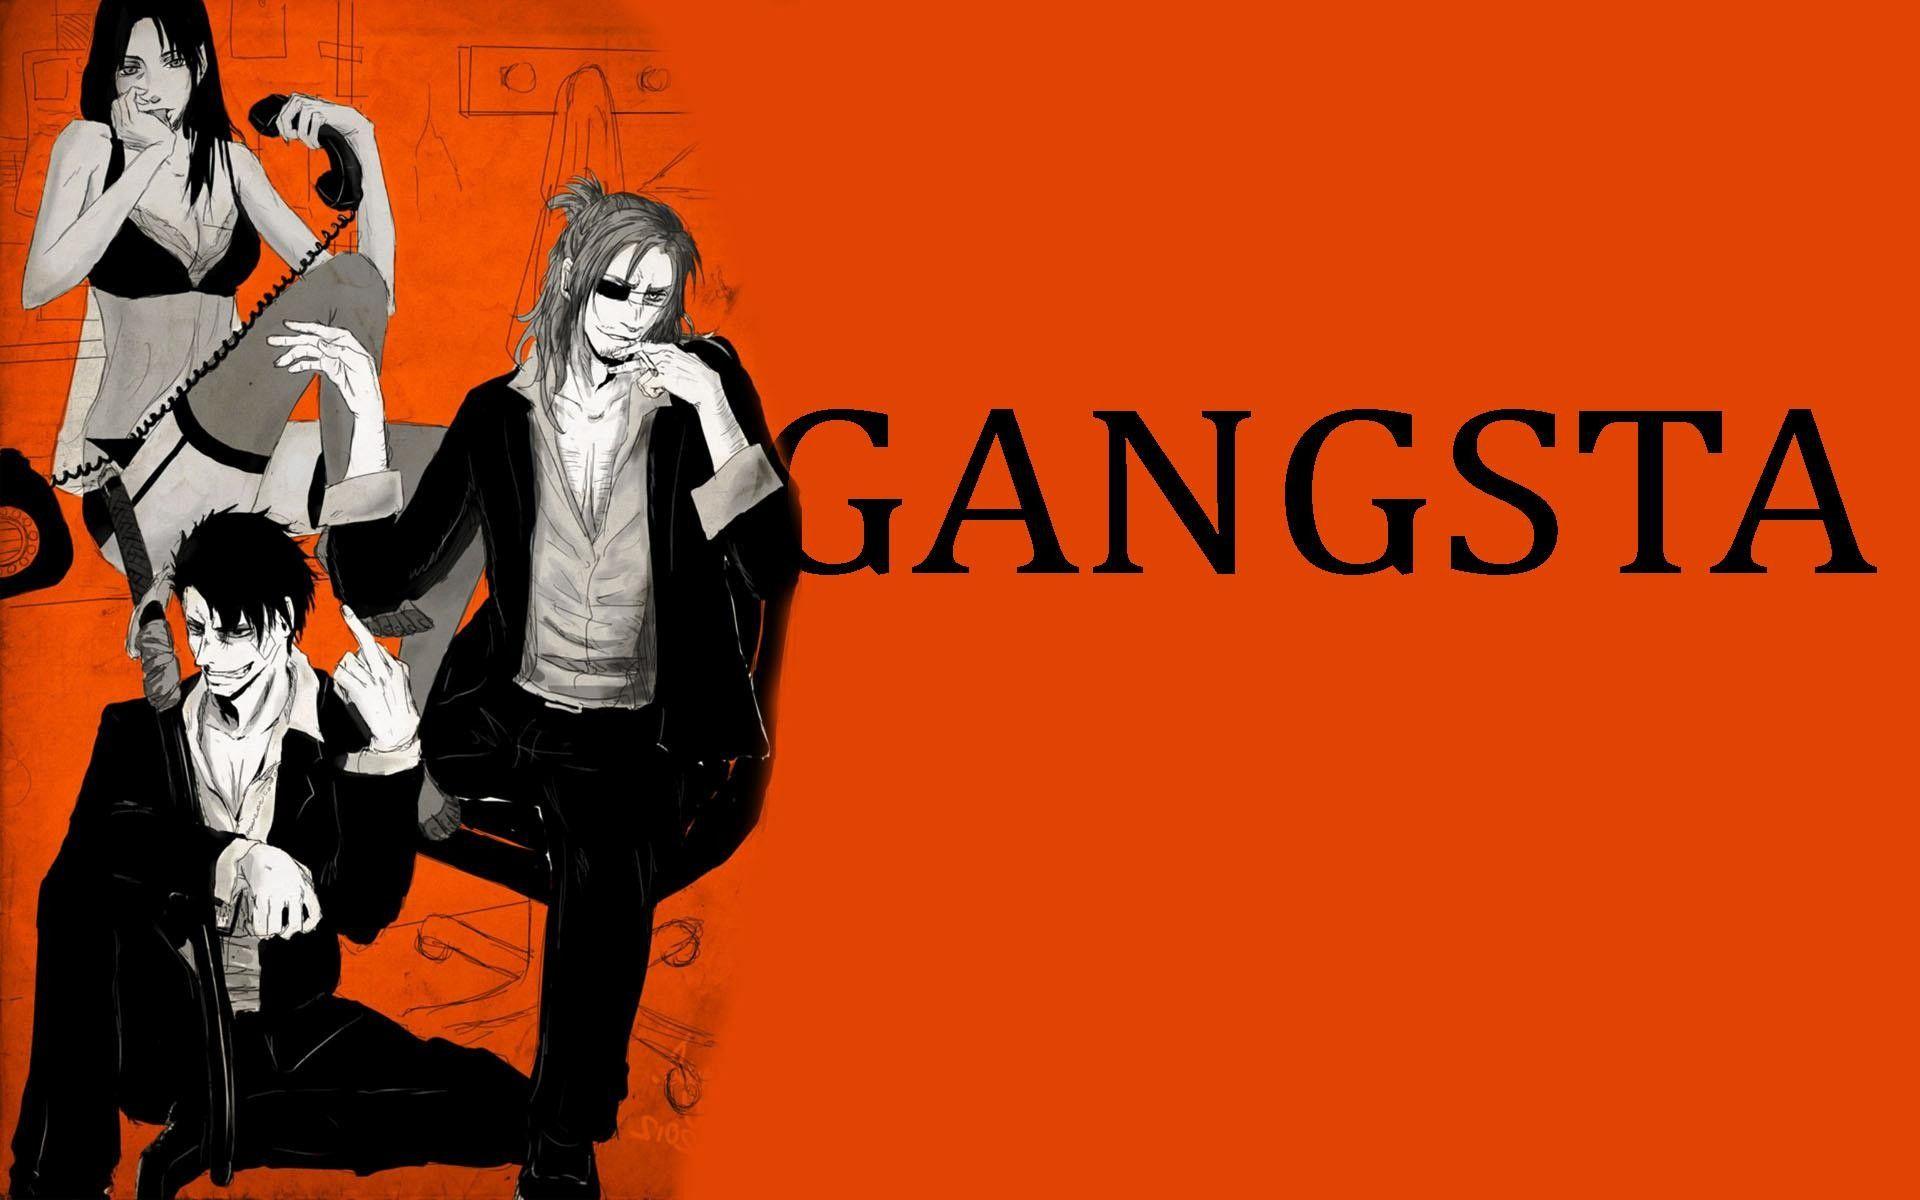 Gangsta Anime Wallpaper for Desktop